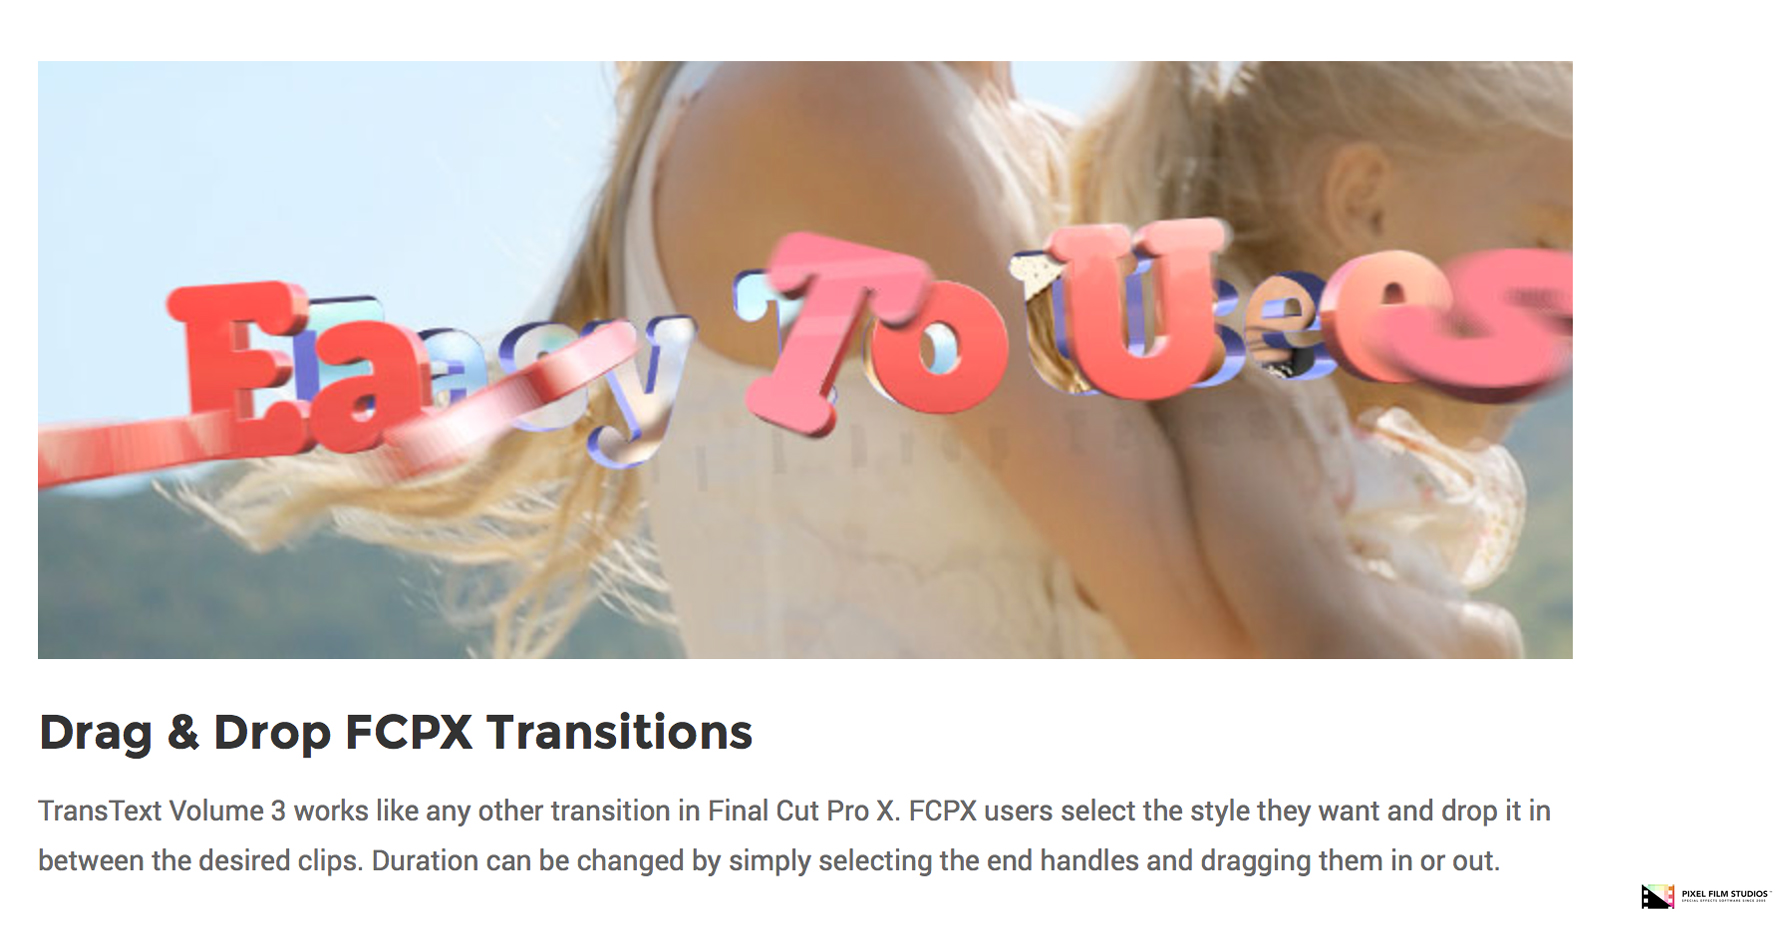 Pixel Film Studios - TransText Volume 3 - Final Cut Pro X